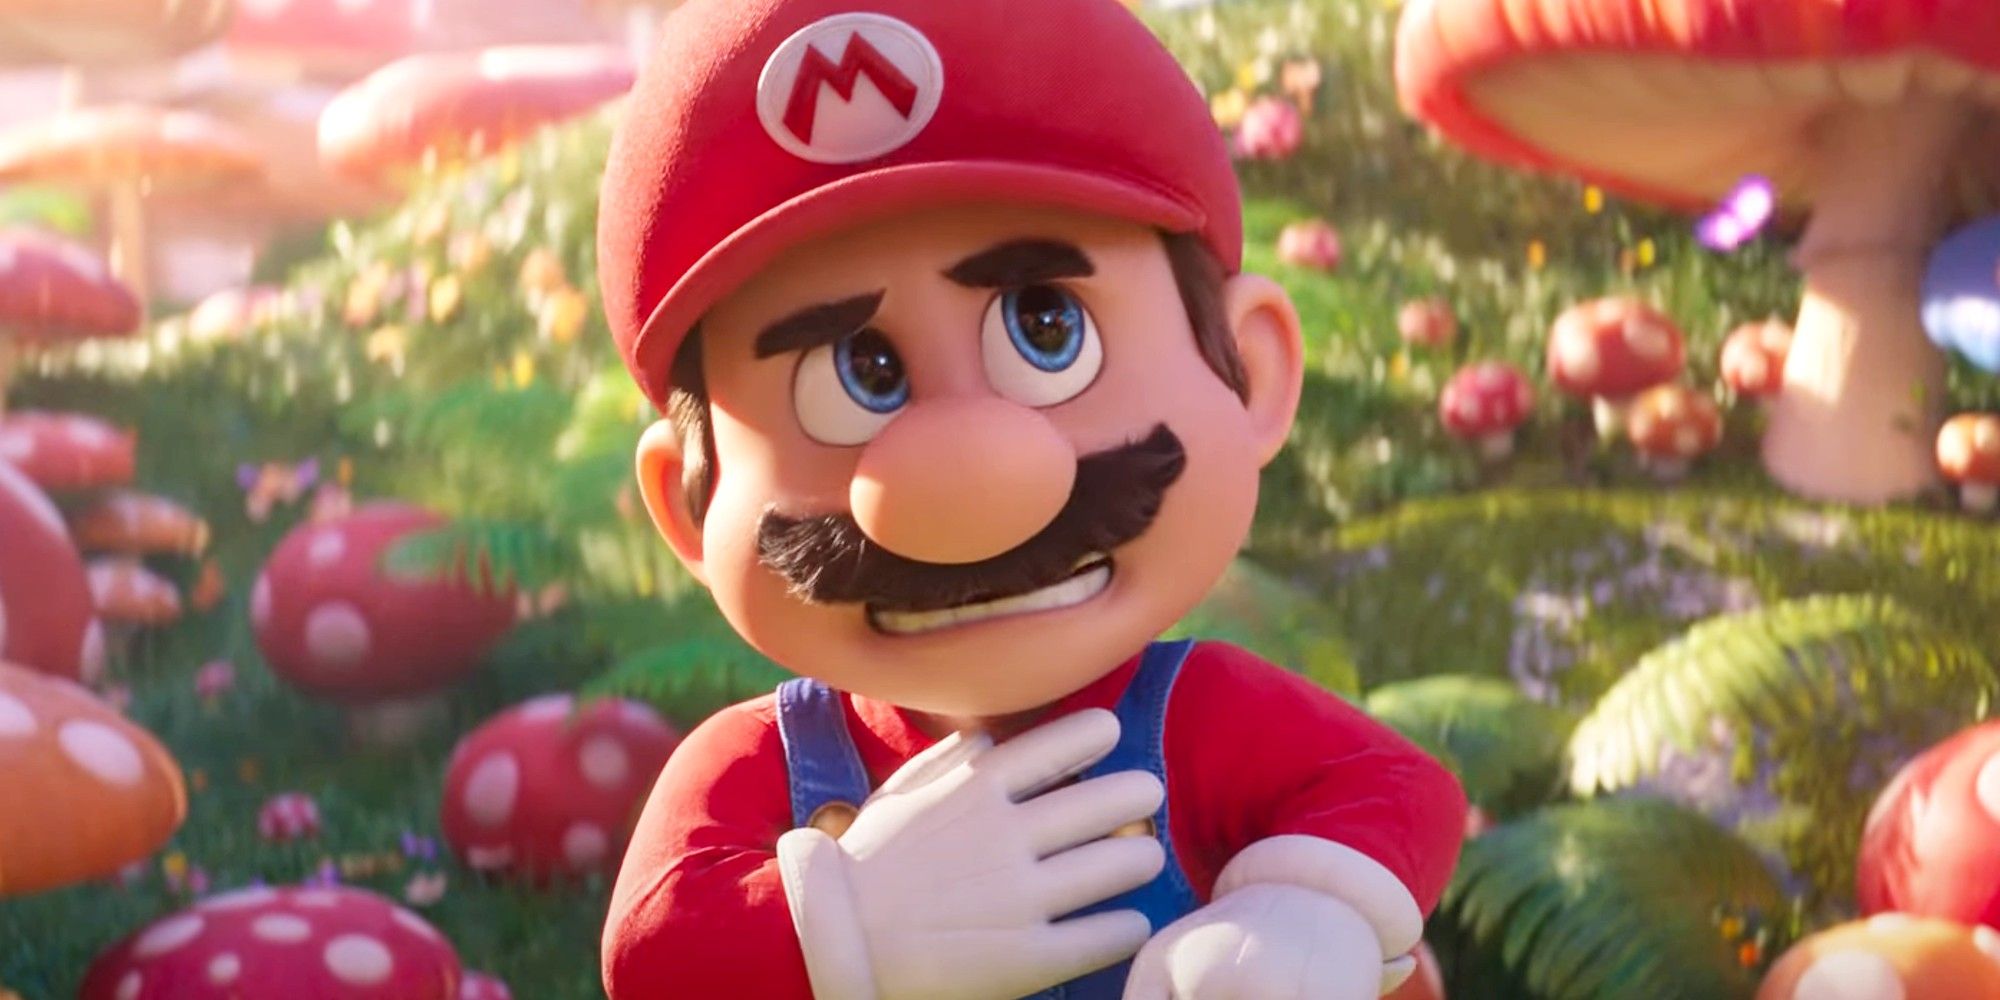 Illumination Super Mario Bros. Chris Pratt as Mario